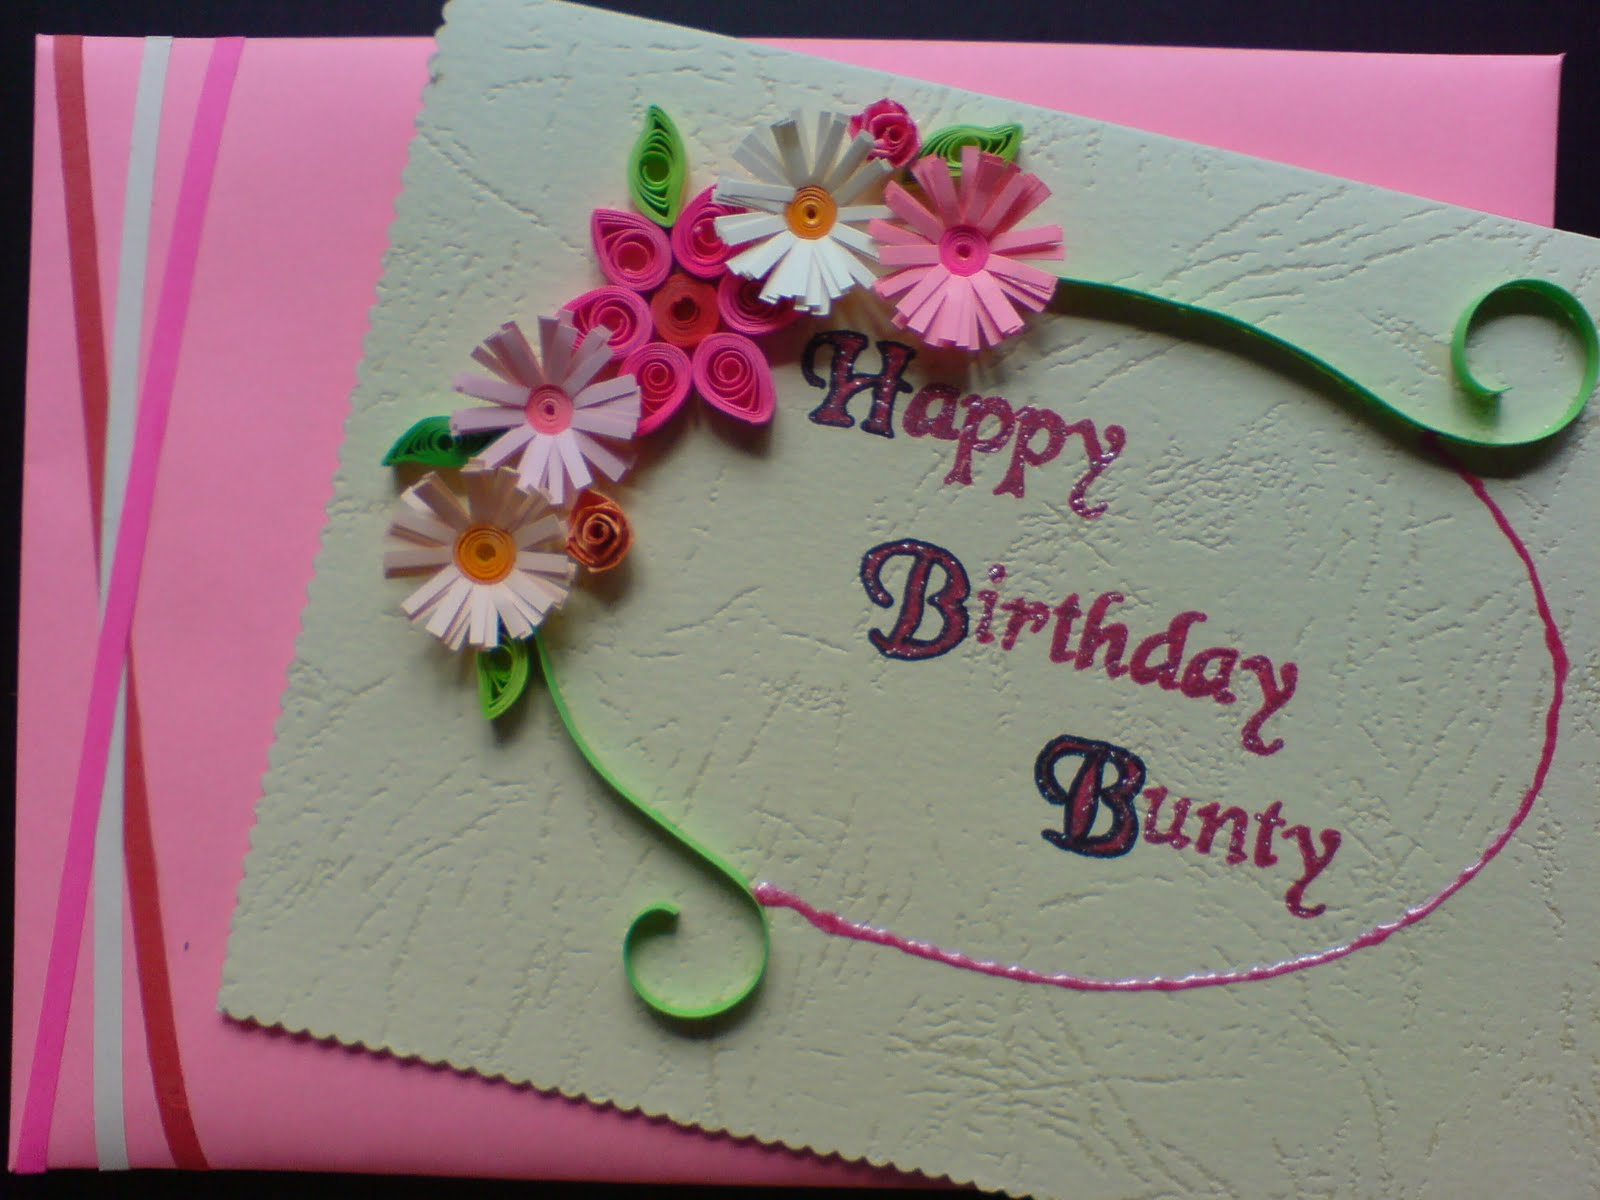 Красивые открытки на день рождения своими руками. Аткрытка своими руками. Идеи для открыток на день рождения. Открытка бабушке на день рожденмиясвоими руками. Открытка для мамы своими руками.